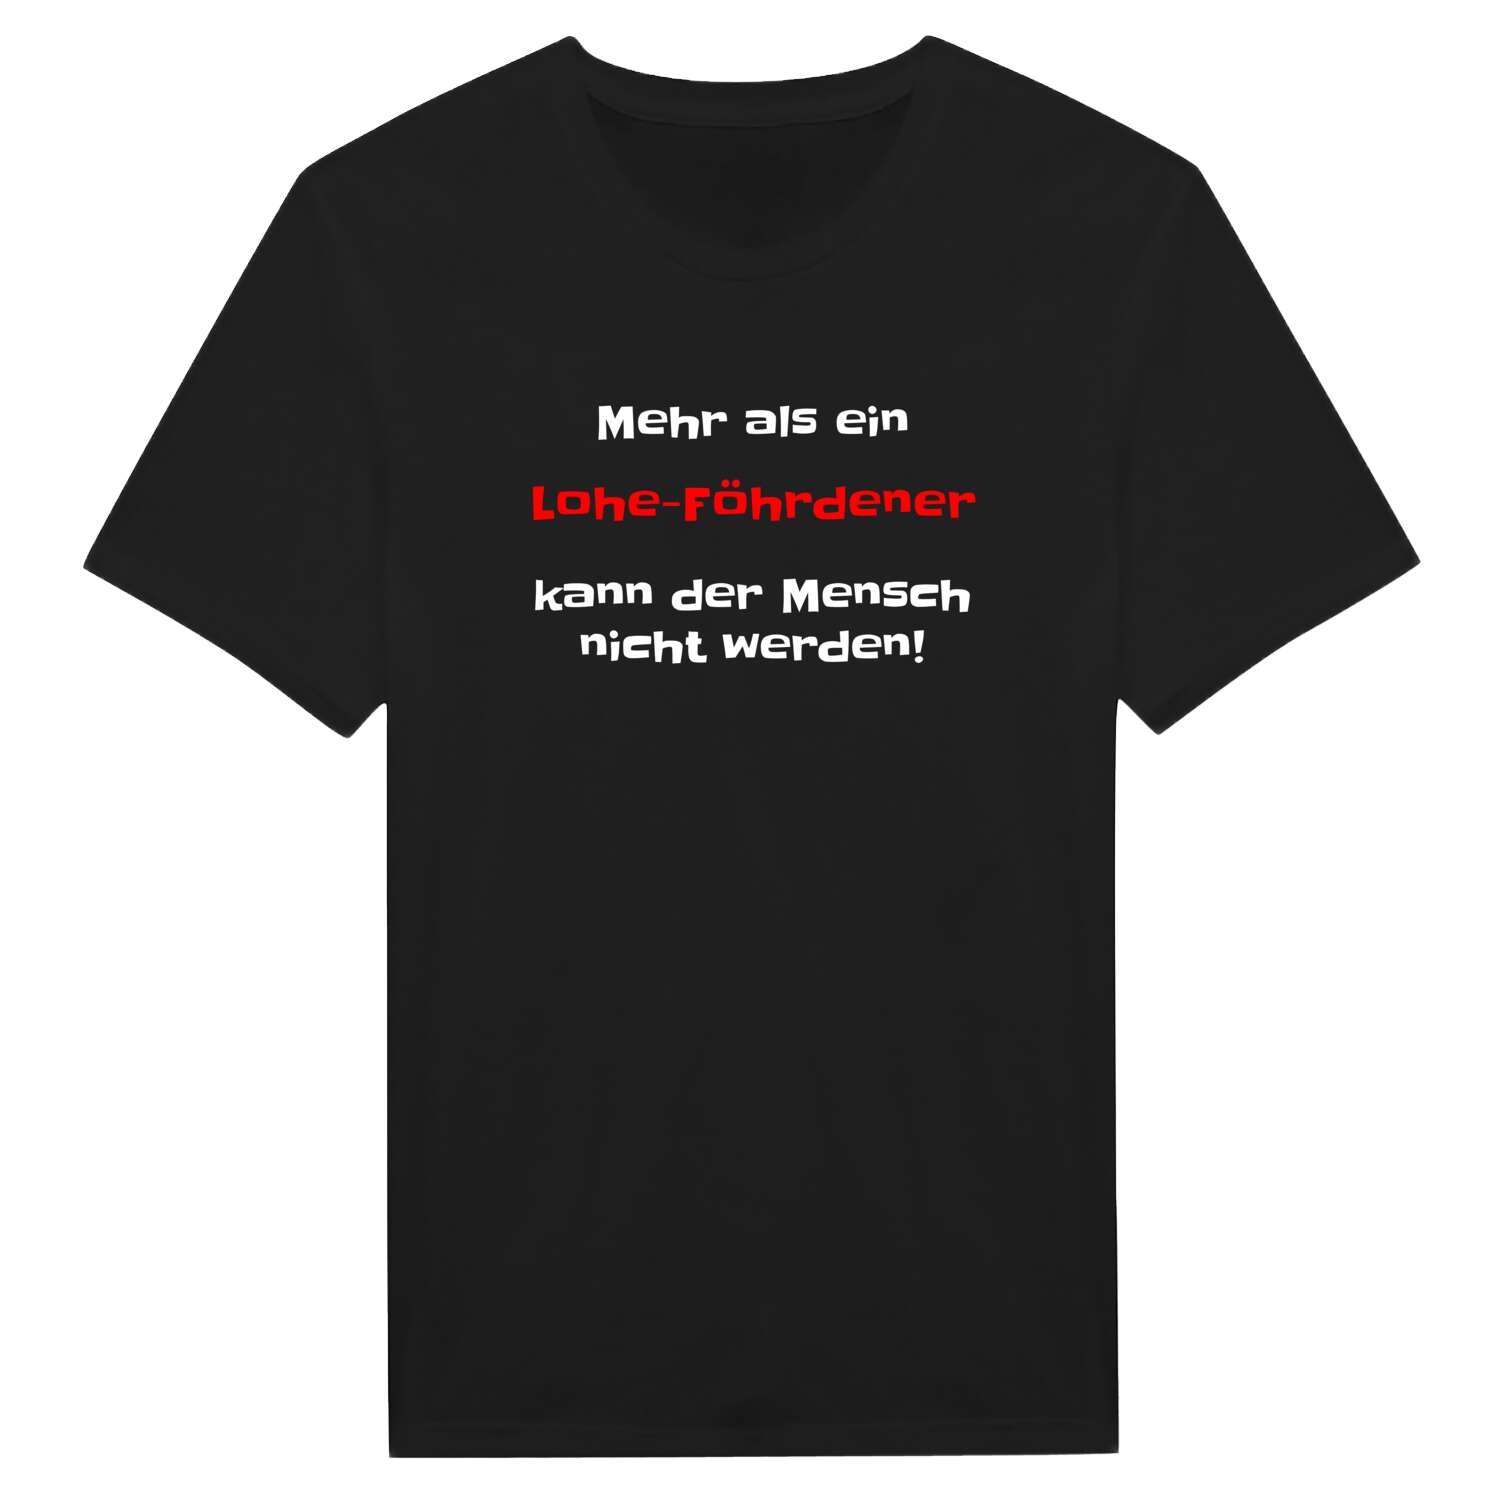 Lohe-Föhrden T-Shirt »Mehr als ein«